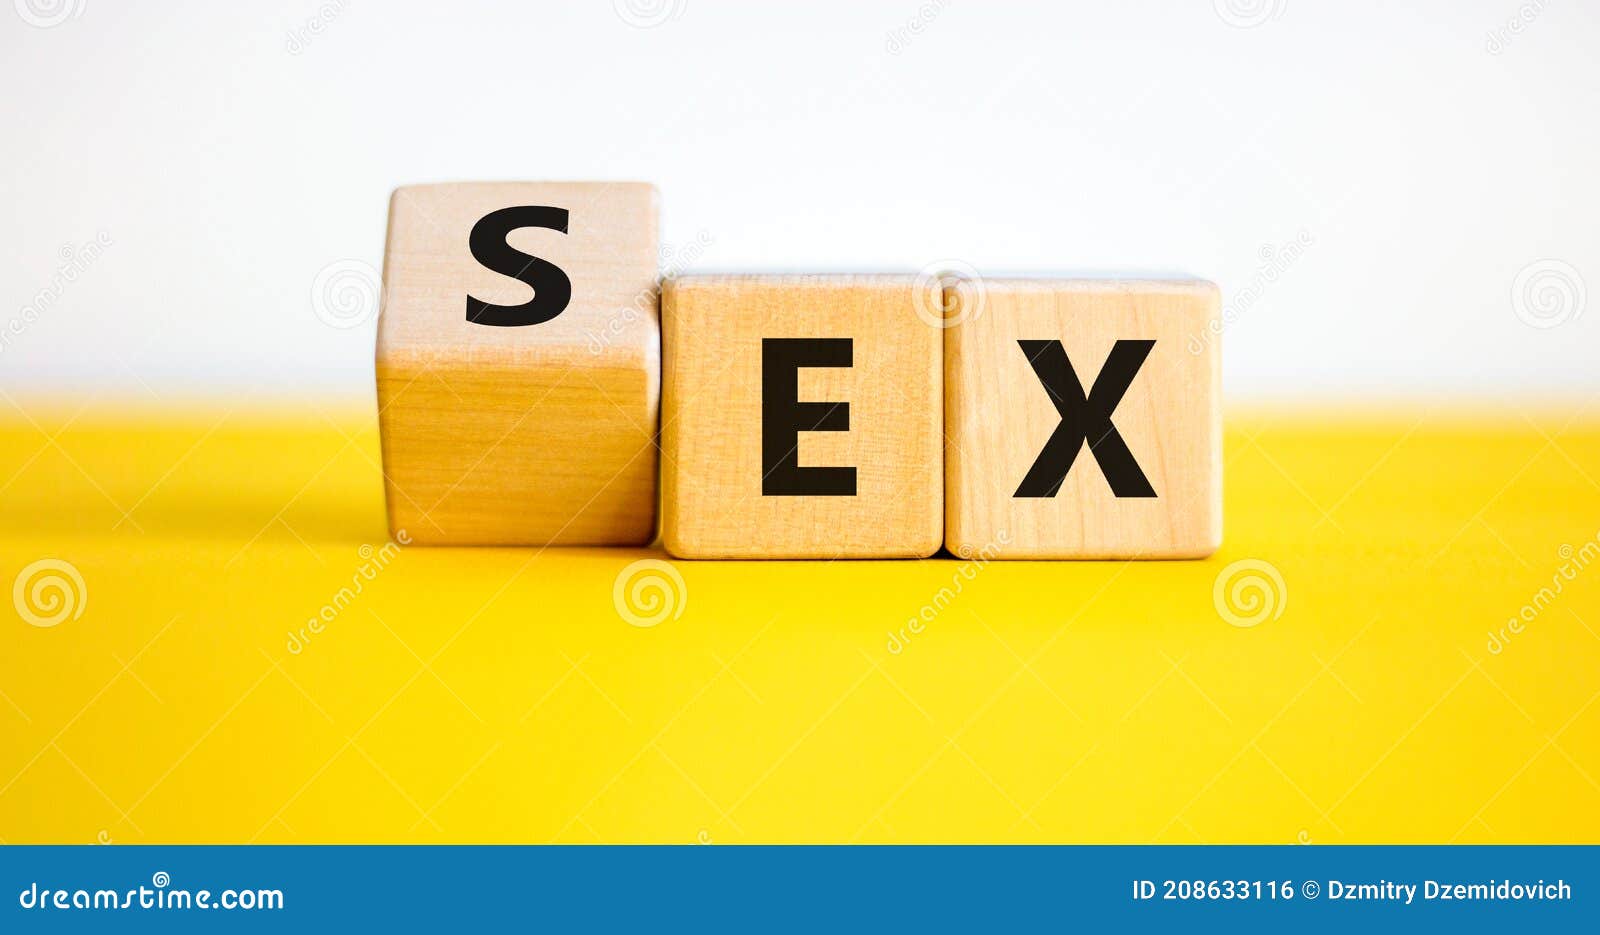 Sex Mit Einem Ex Symbol Drehte Einen Würfel Und änderte Das Wort Das Geschlecht Ex Ist Weißer